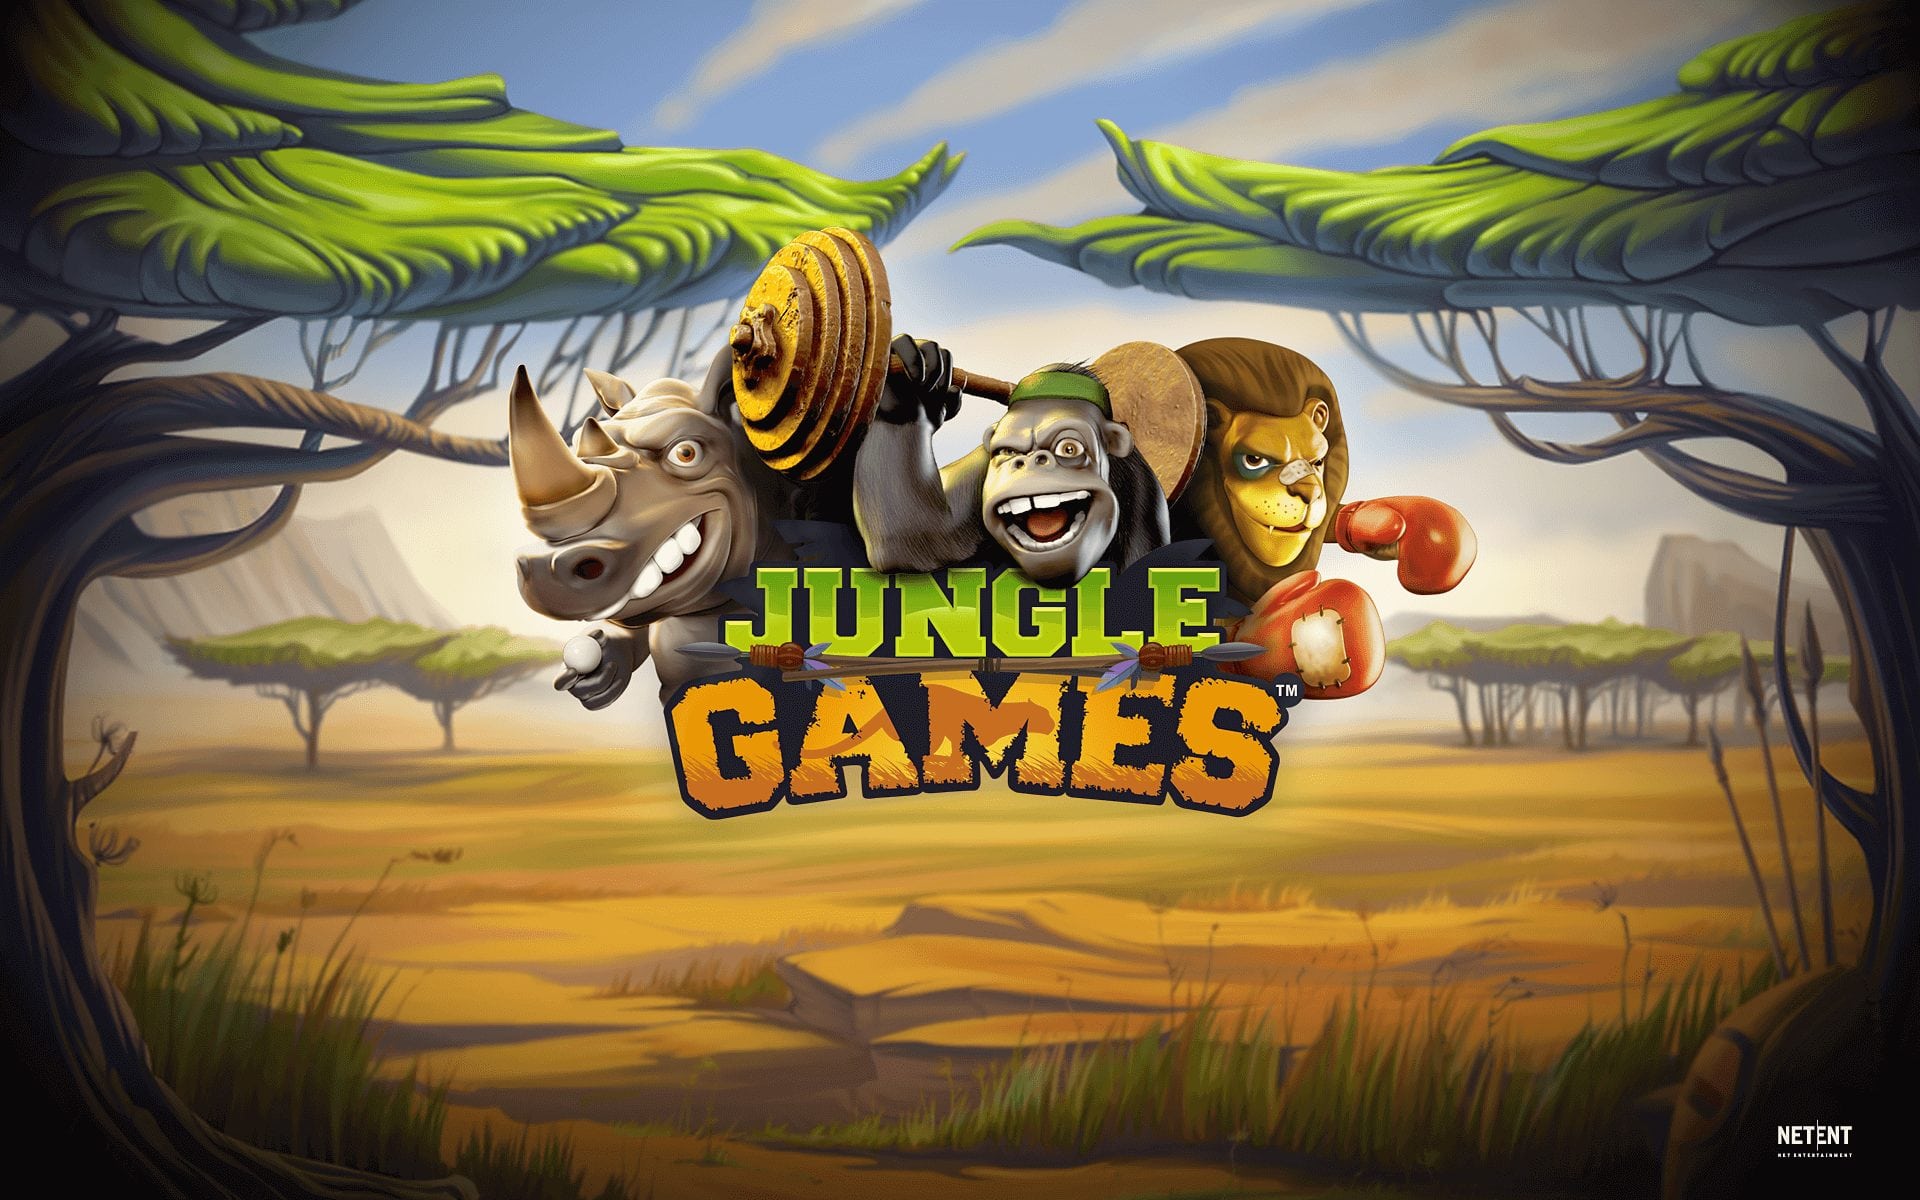 Jungle games slot